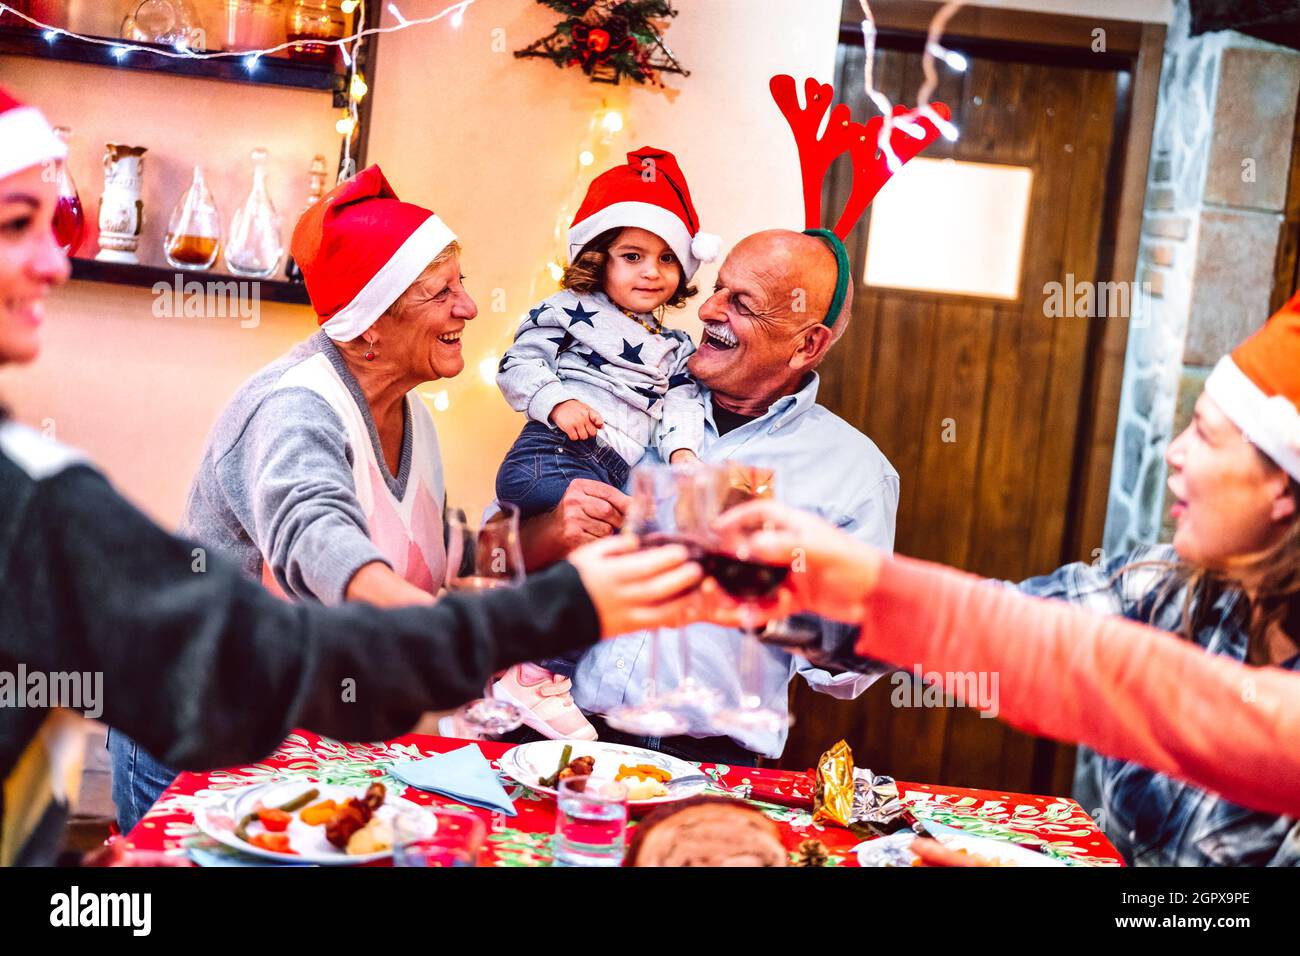 Multi-Generation-Familie mit Spaß auf Weihnachtsessen Party - Winterurlaub Weihnachten Konzept mit Großeltern und Tochter zusammen essen Eröffnungsgeschenk Stockfoto